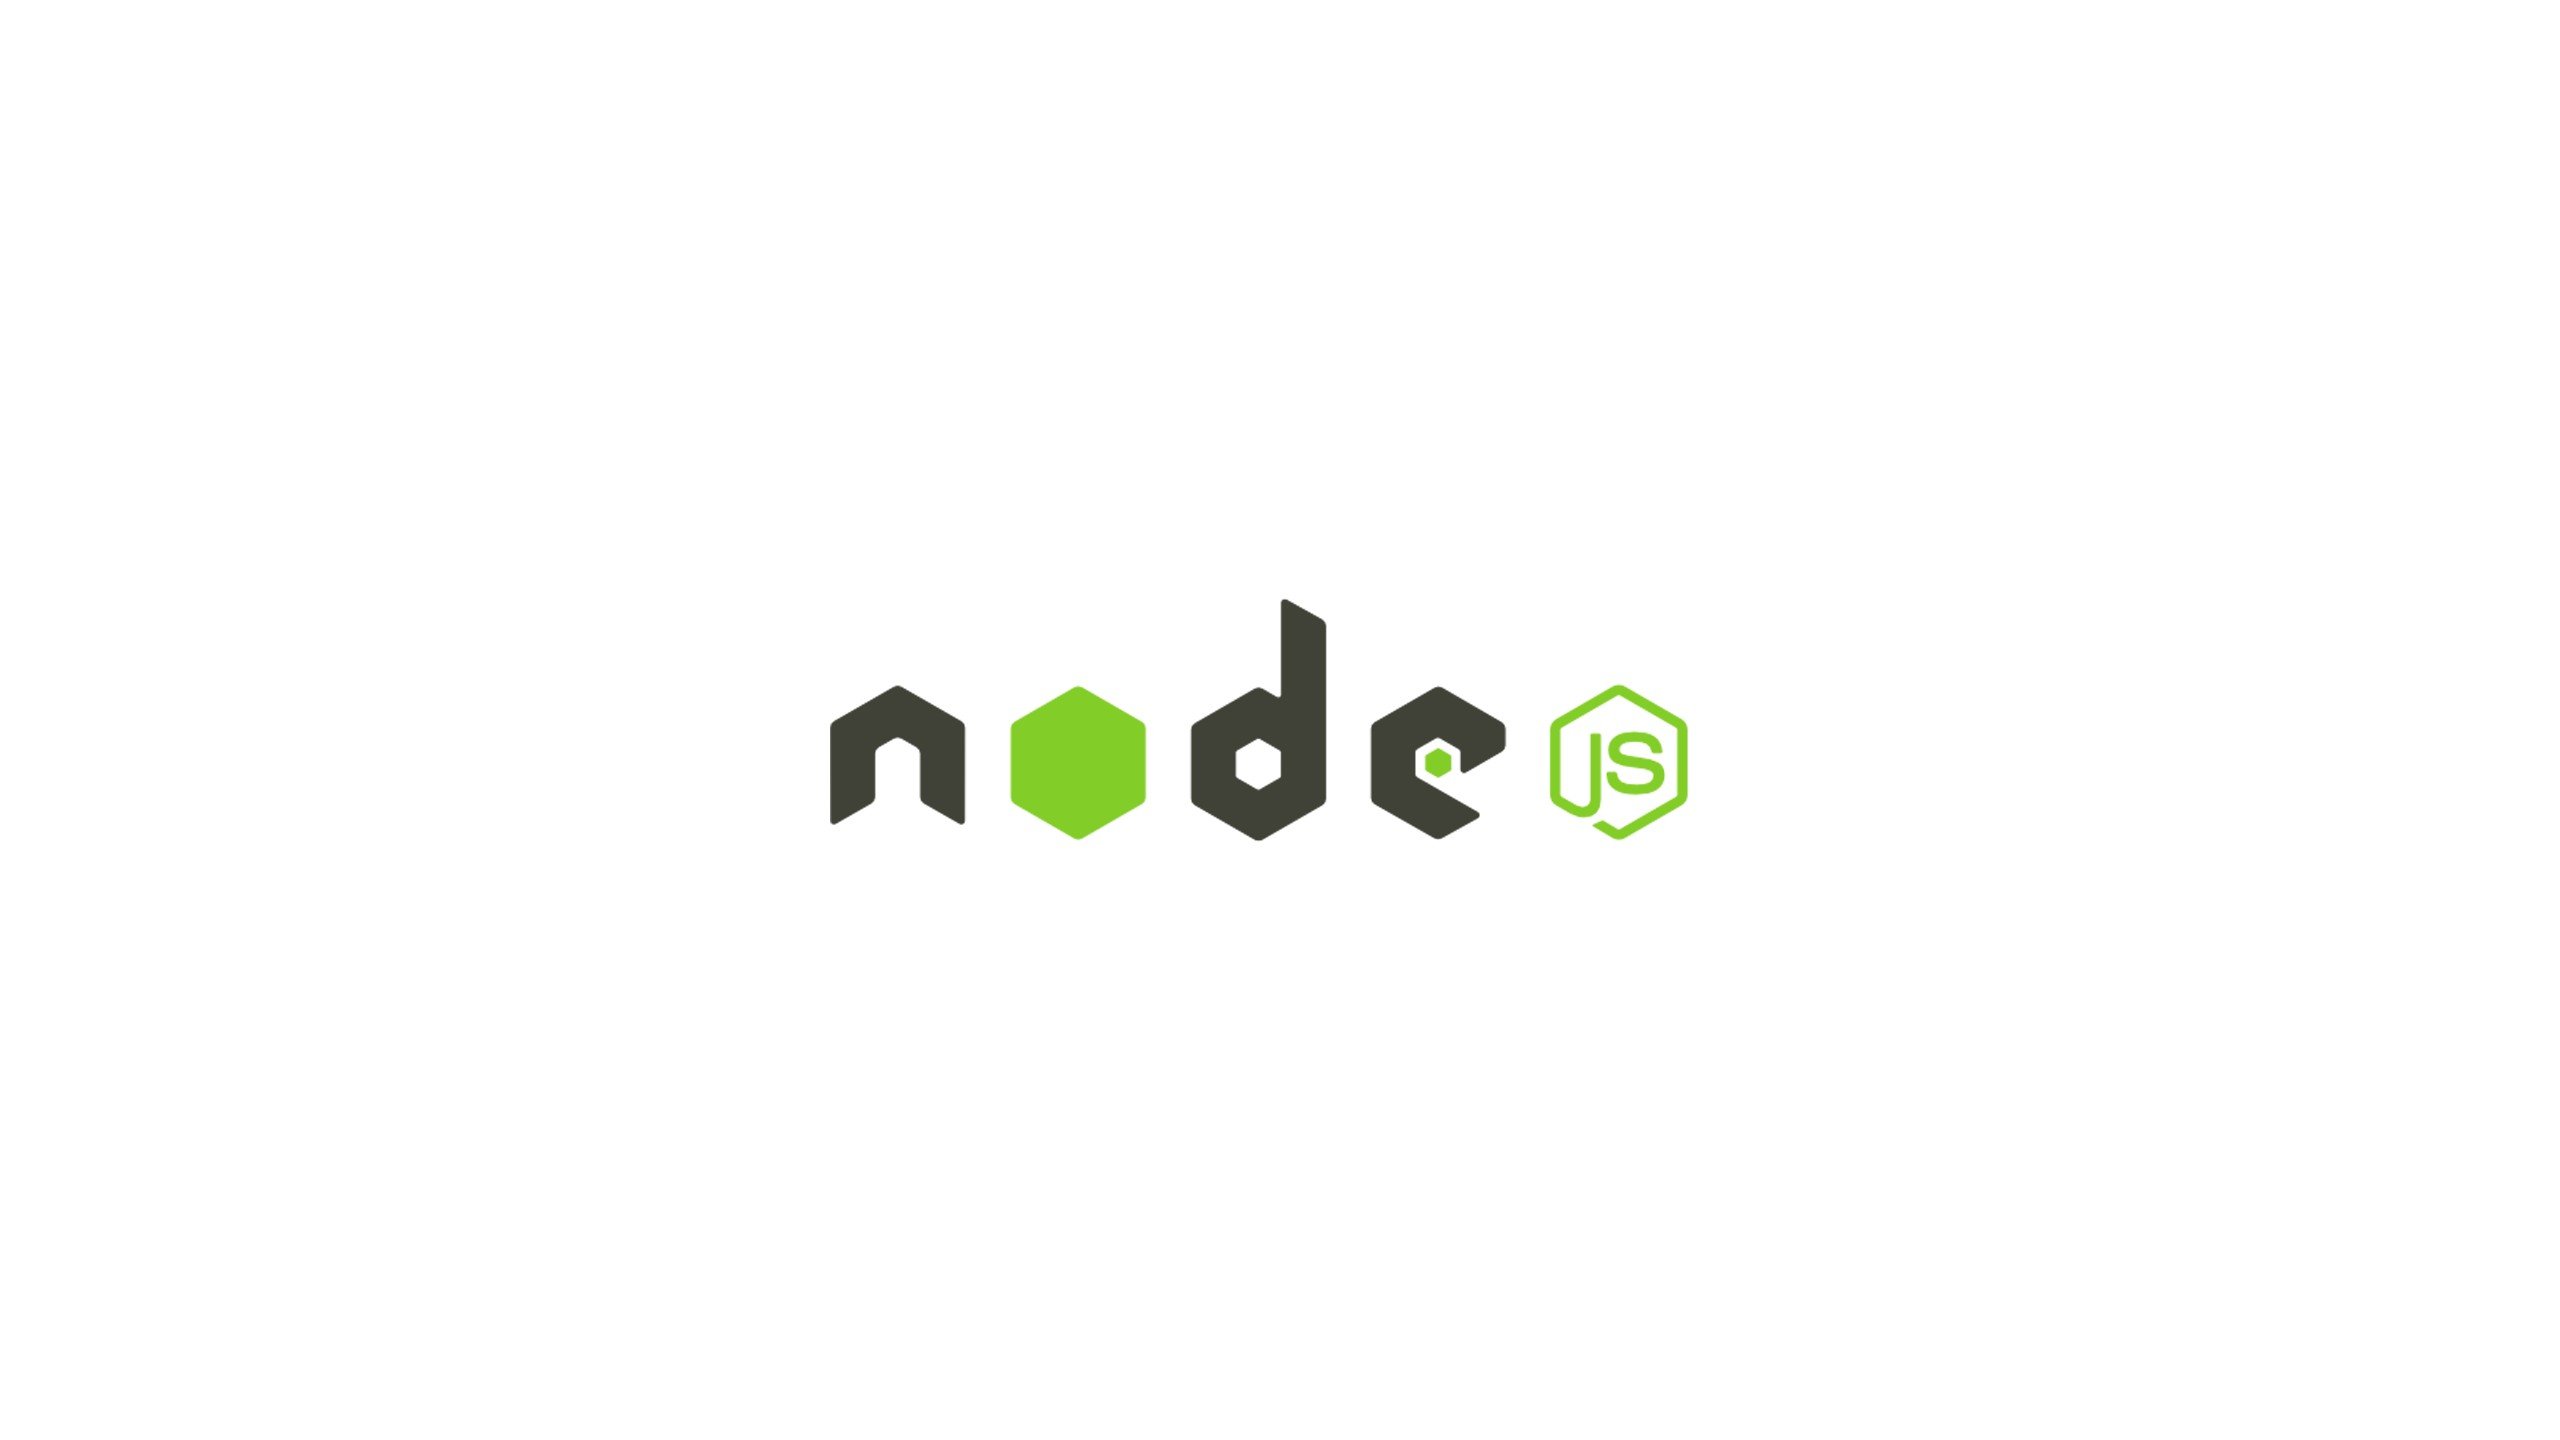 Why Node.js?